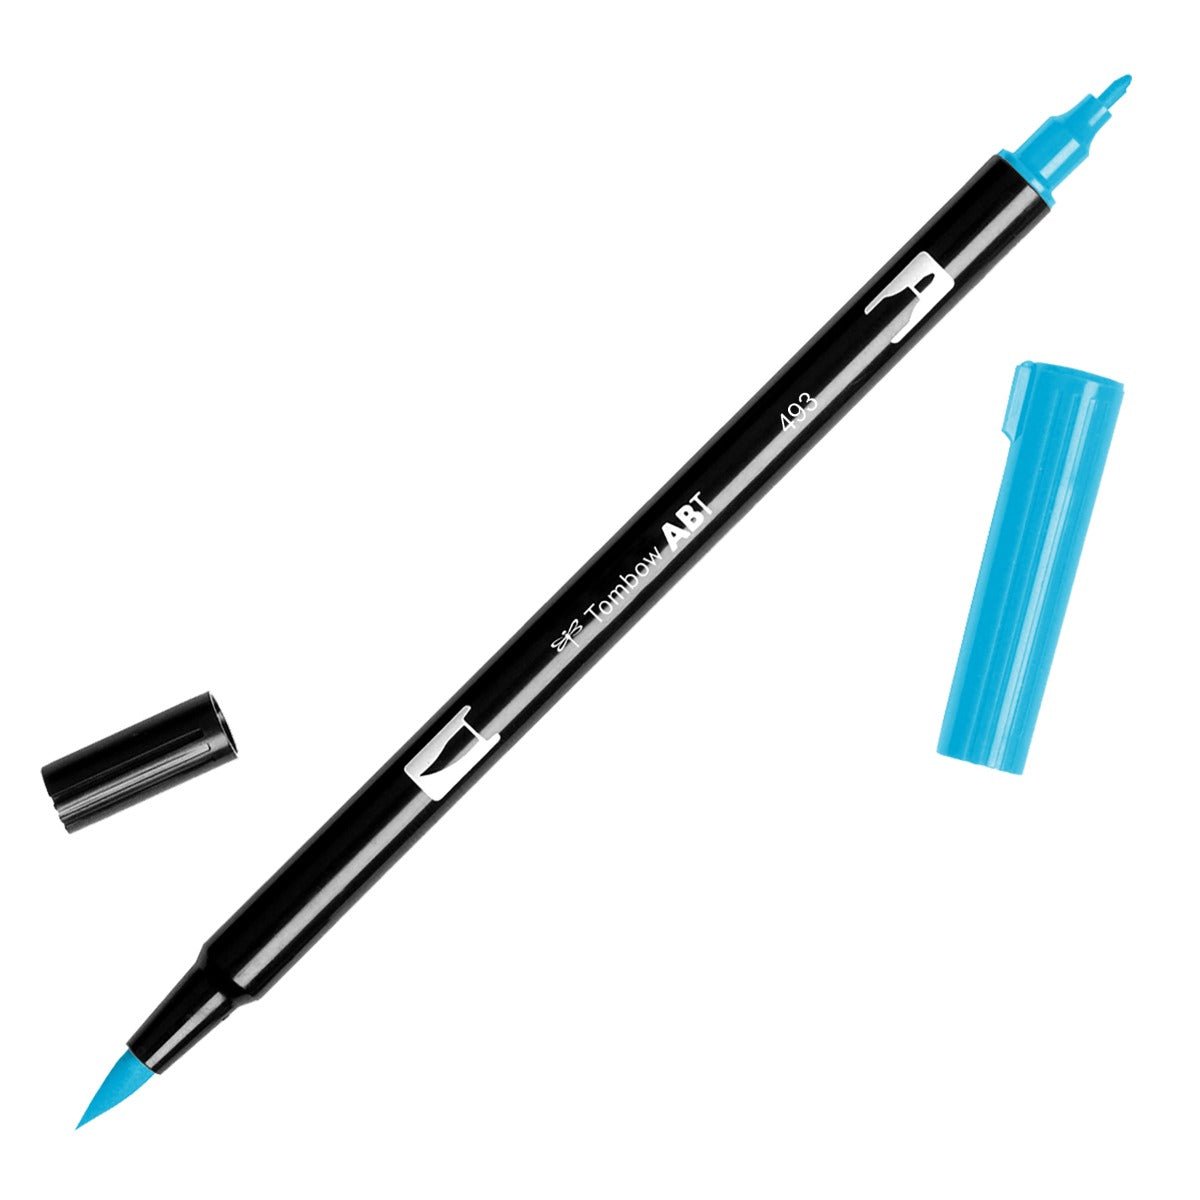 Tombow Dual Brush Pen 493 Reflex Blue - theartshop.com.au